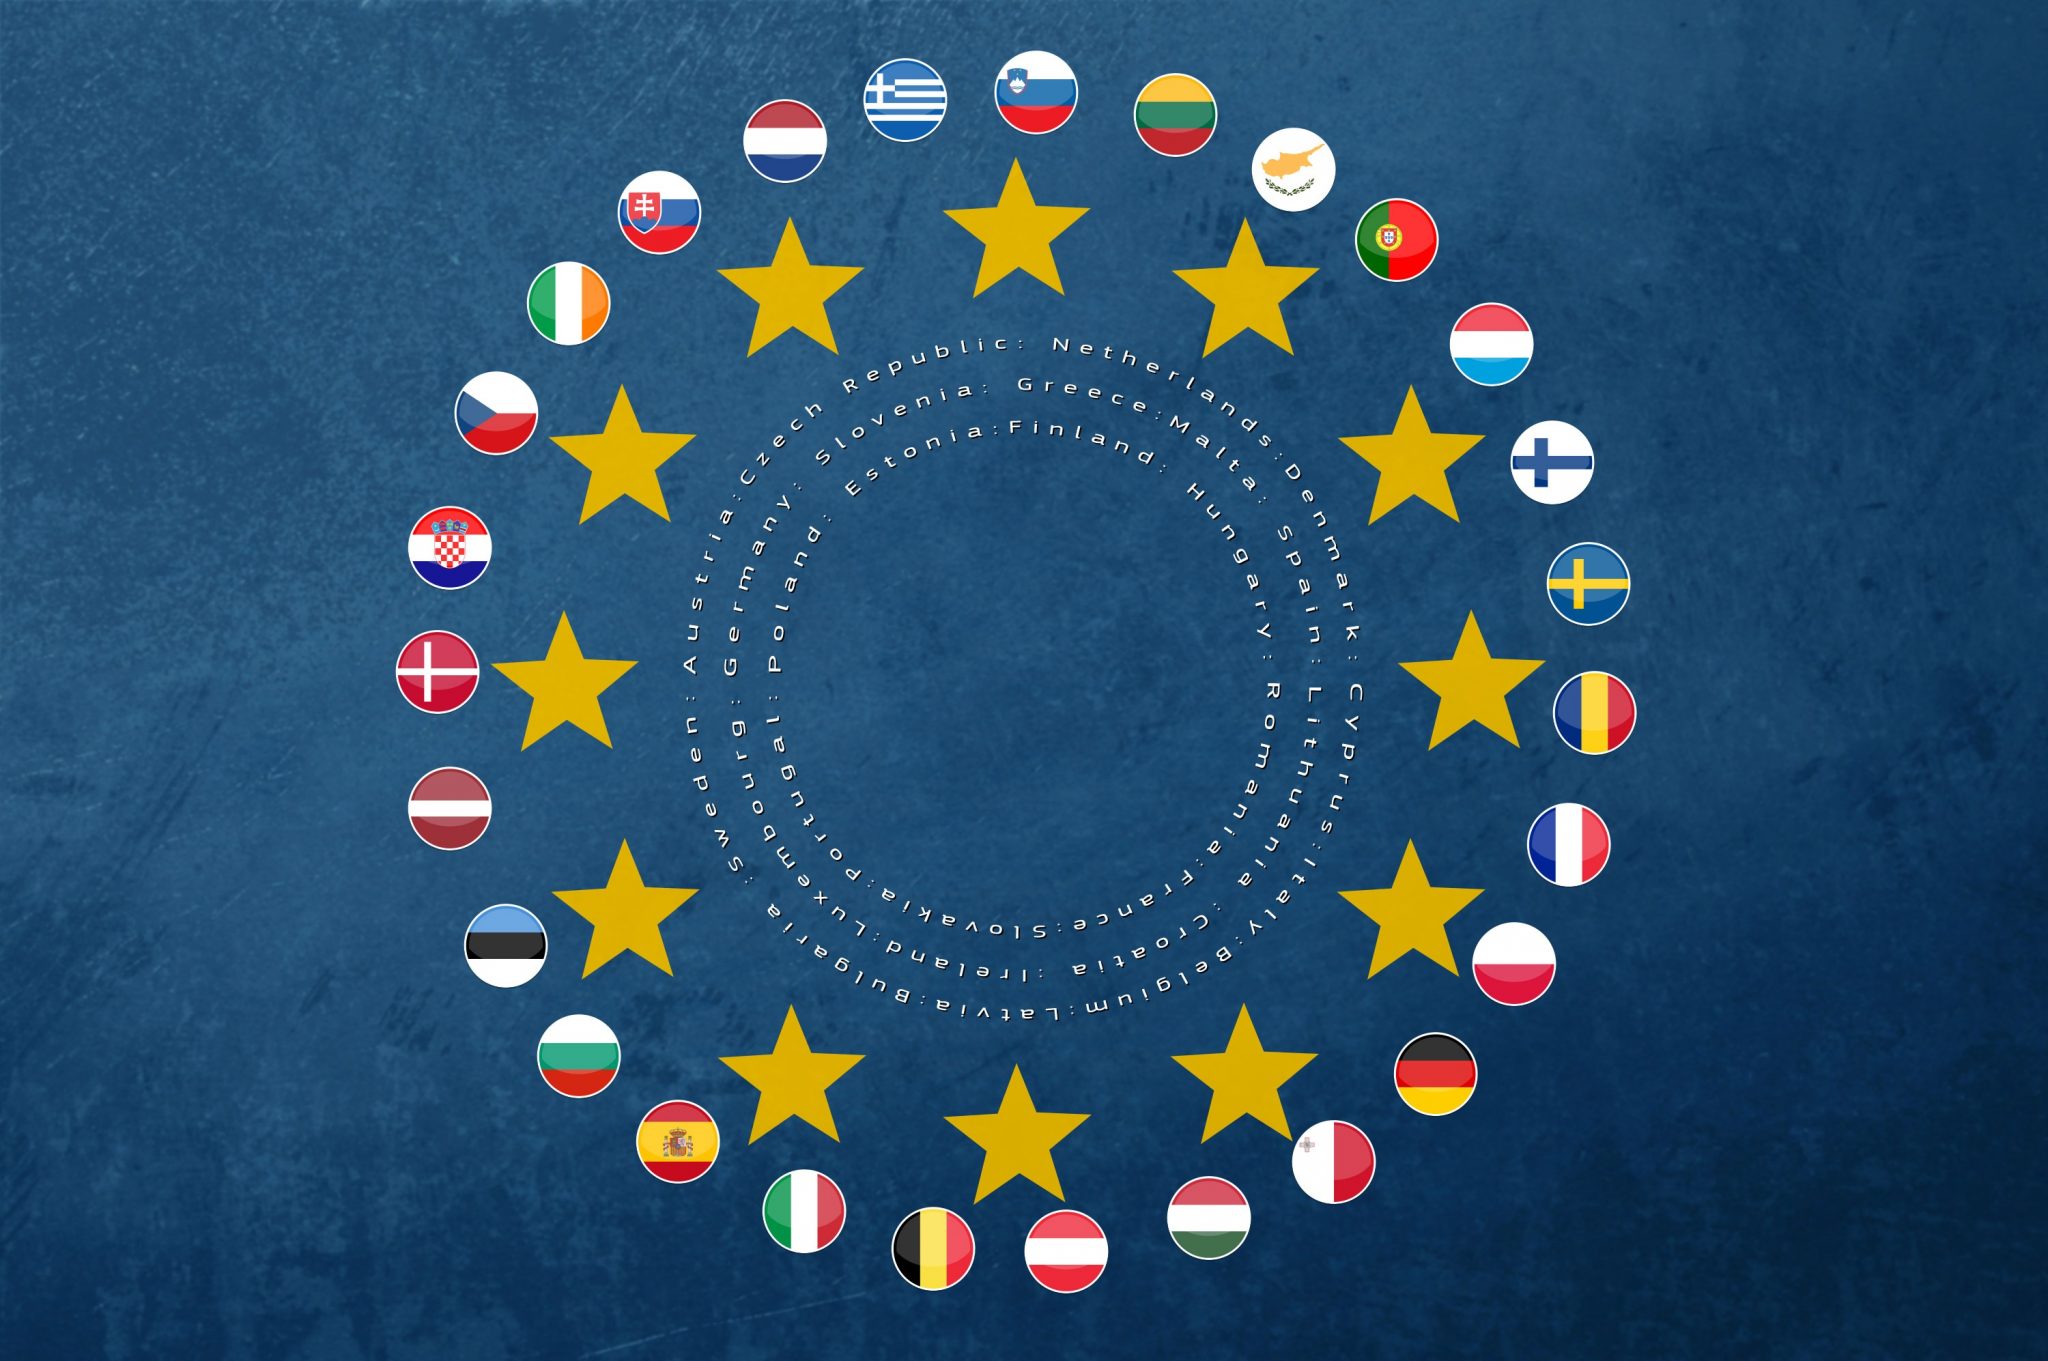 die Flaggen der Mitgliedsstaaten der Europäischen Union um die Sterne der Europaflagge kreisförmig angeordnet